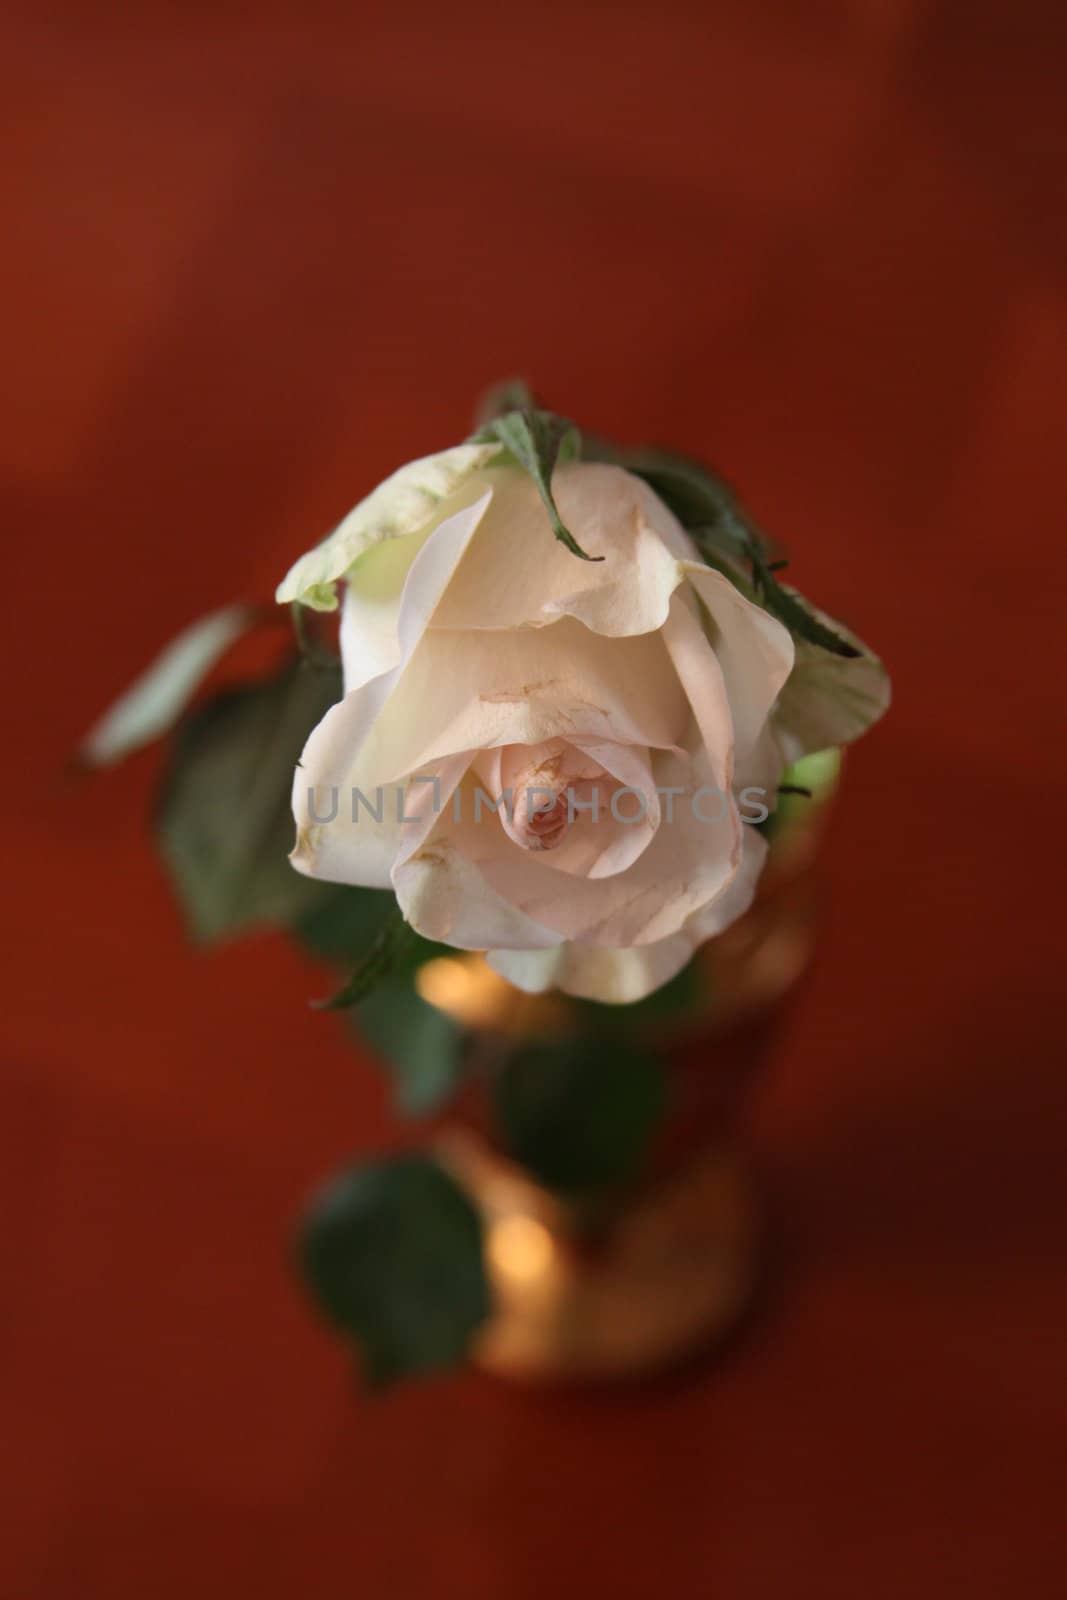 White rose flower in a vase.